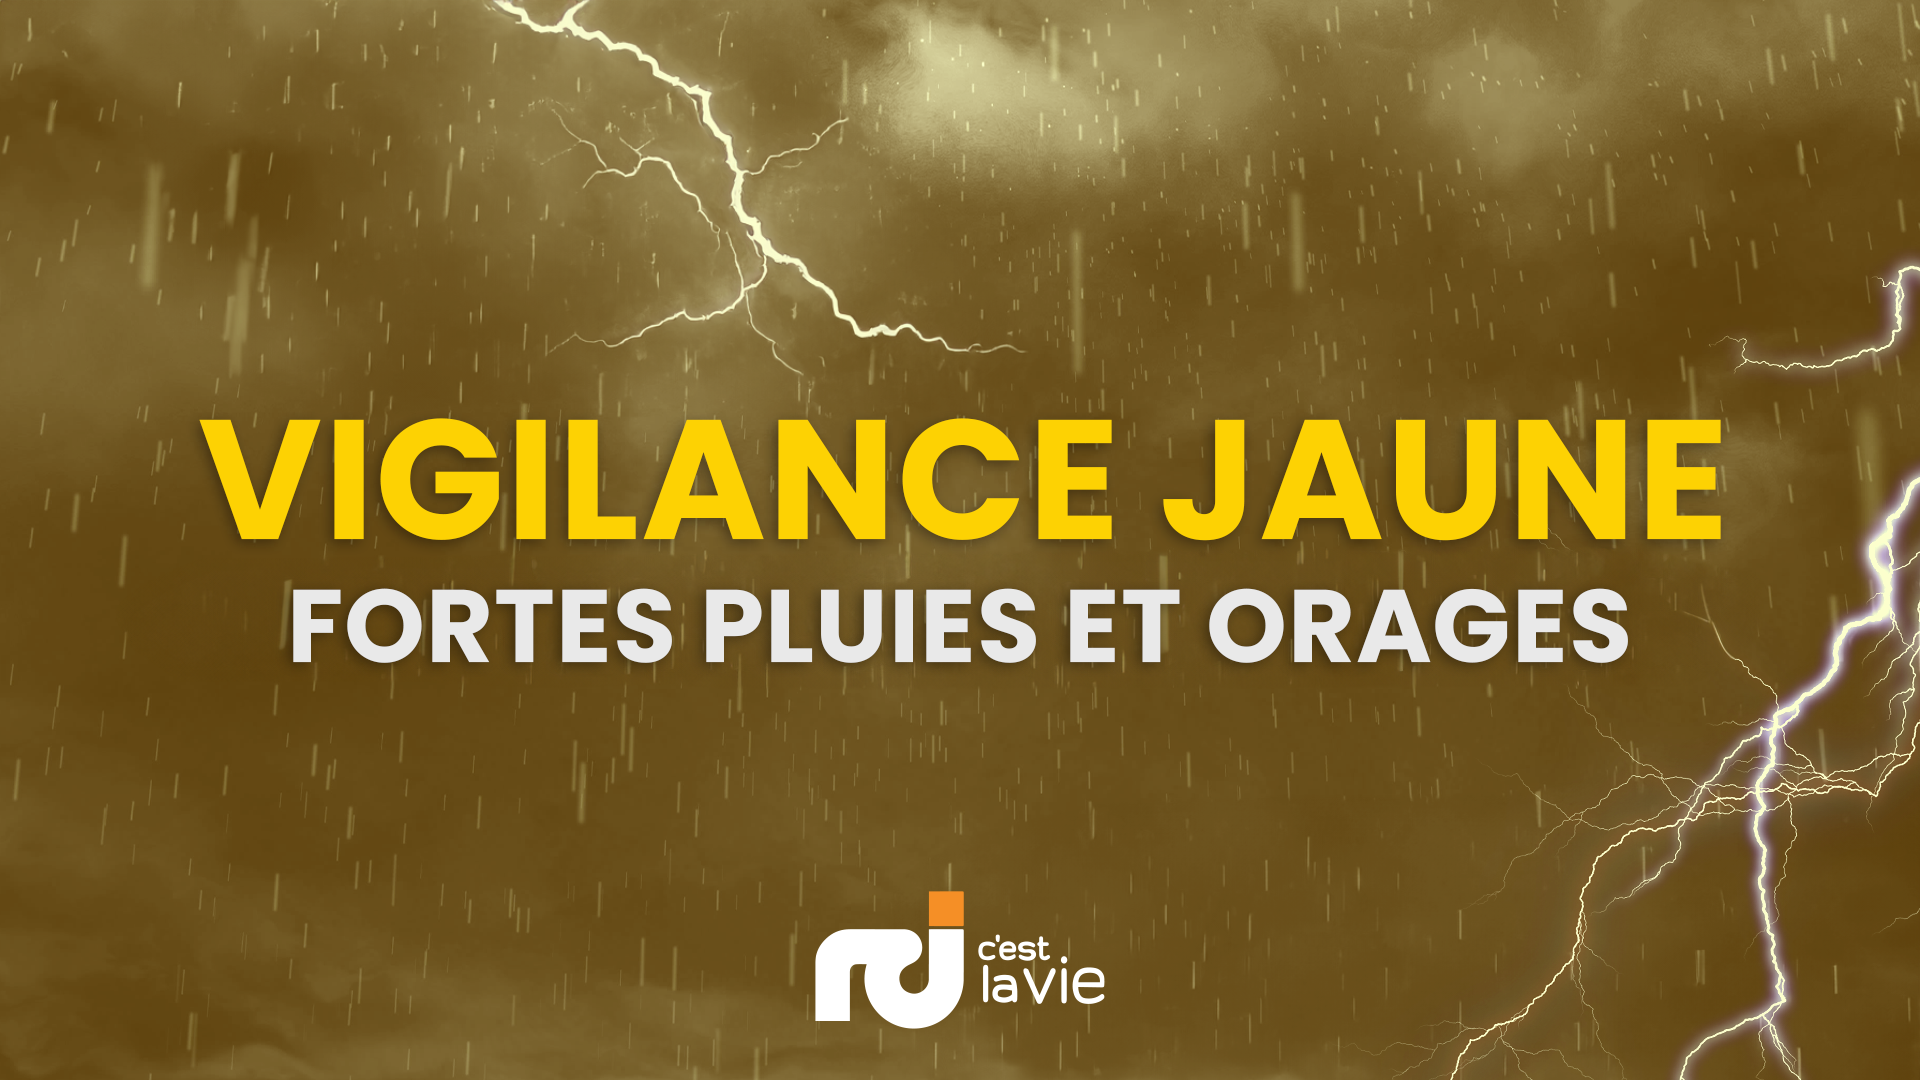     Vigilance jaune : malgré sa position éloignée, la tempête Philippe perturbe la météo en Martinique

